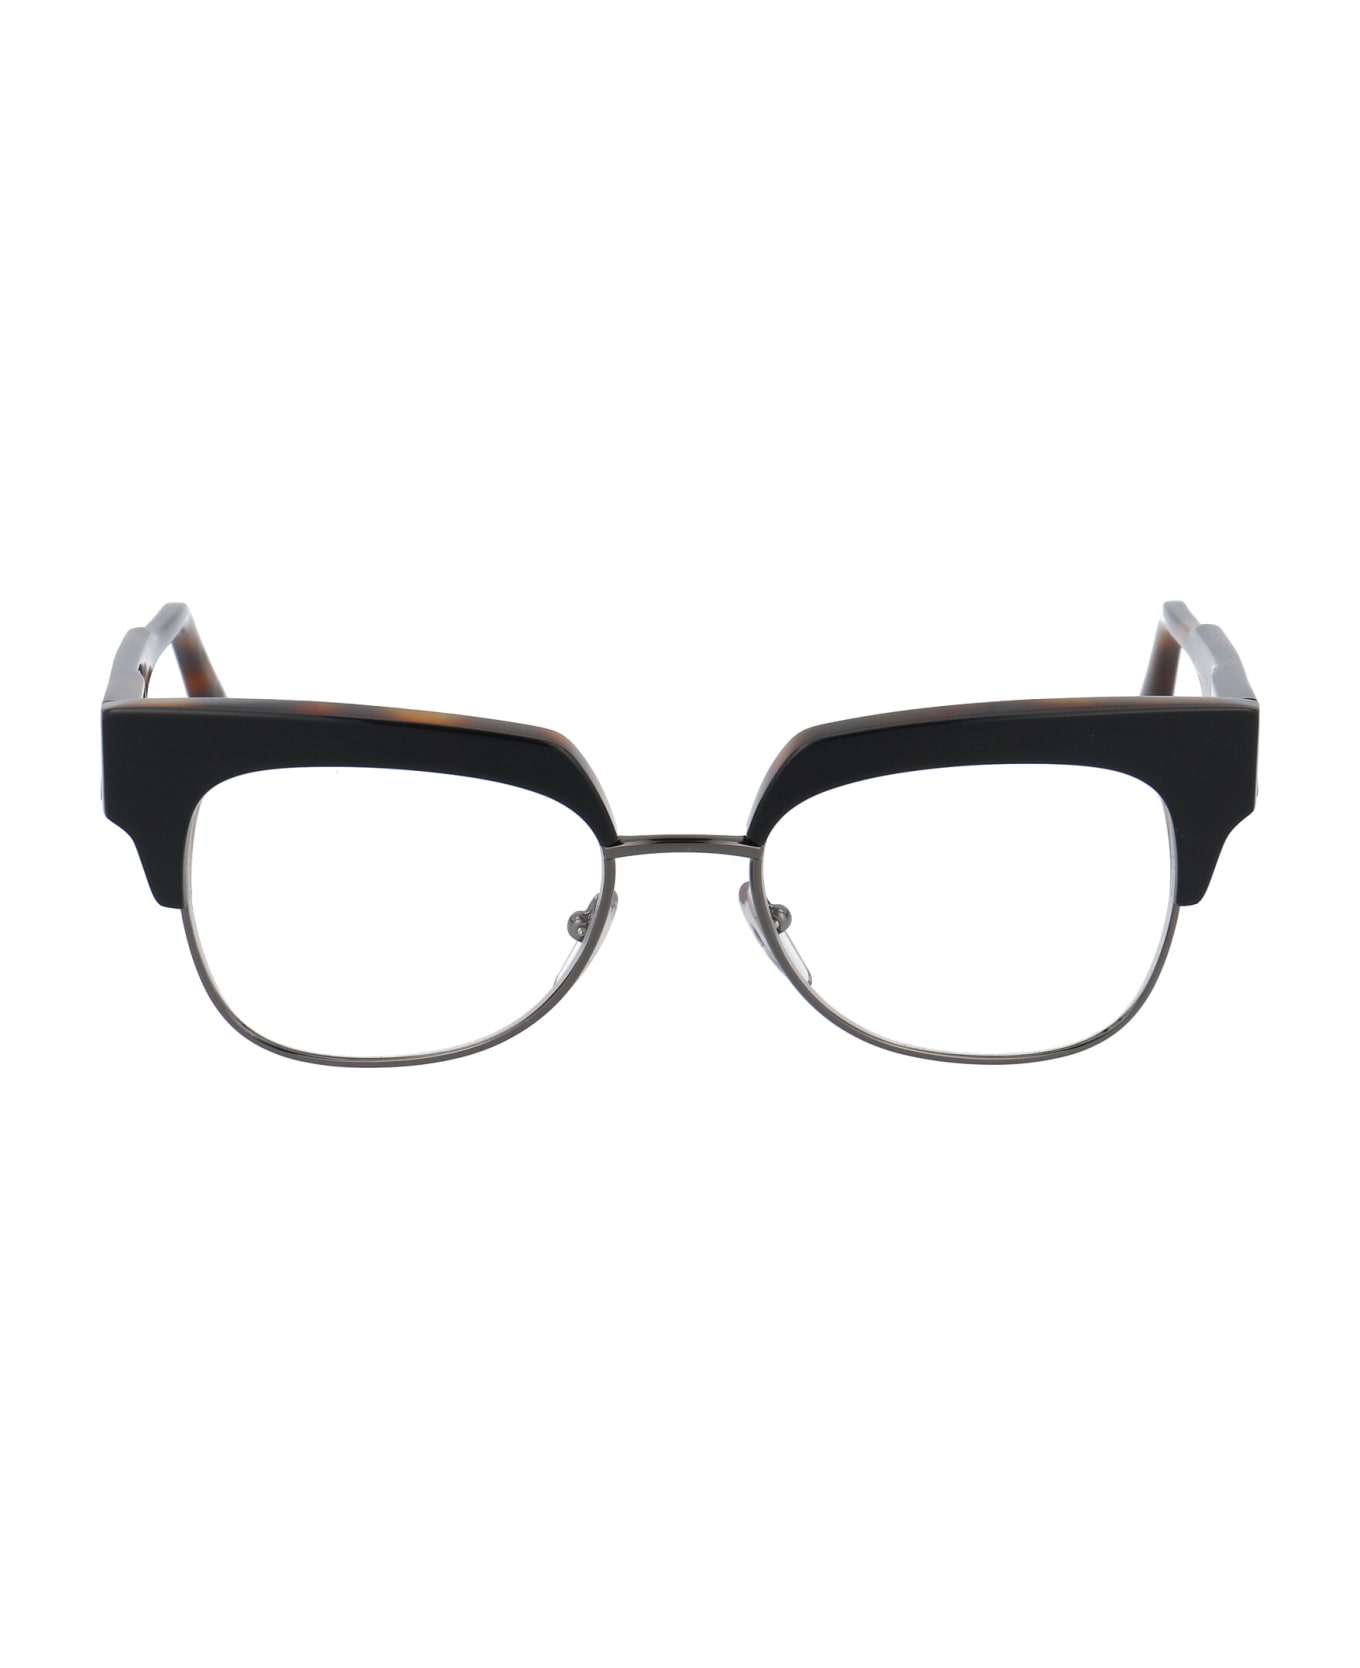 Marni Eyewear Me2601 Glasses - 004 BLACK HAVANA アイウェア